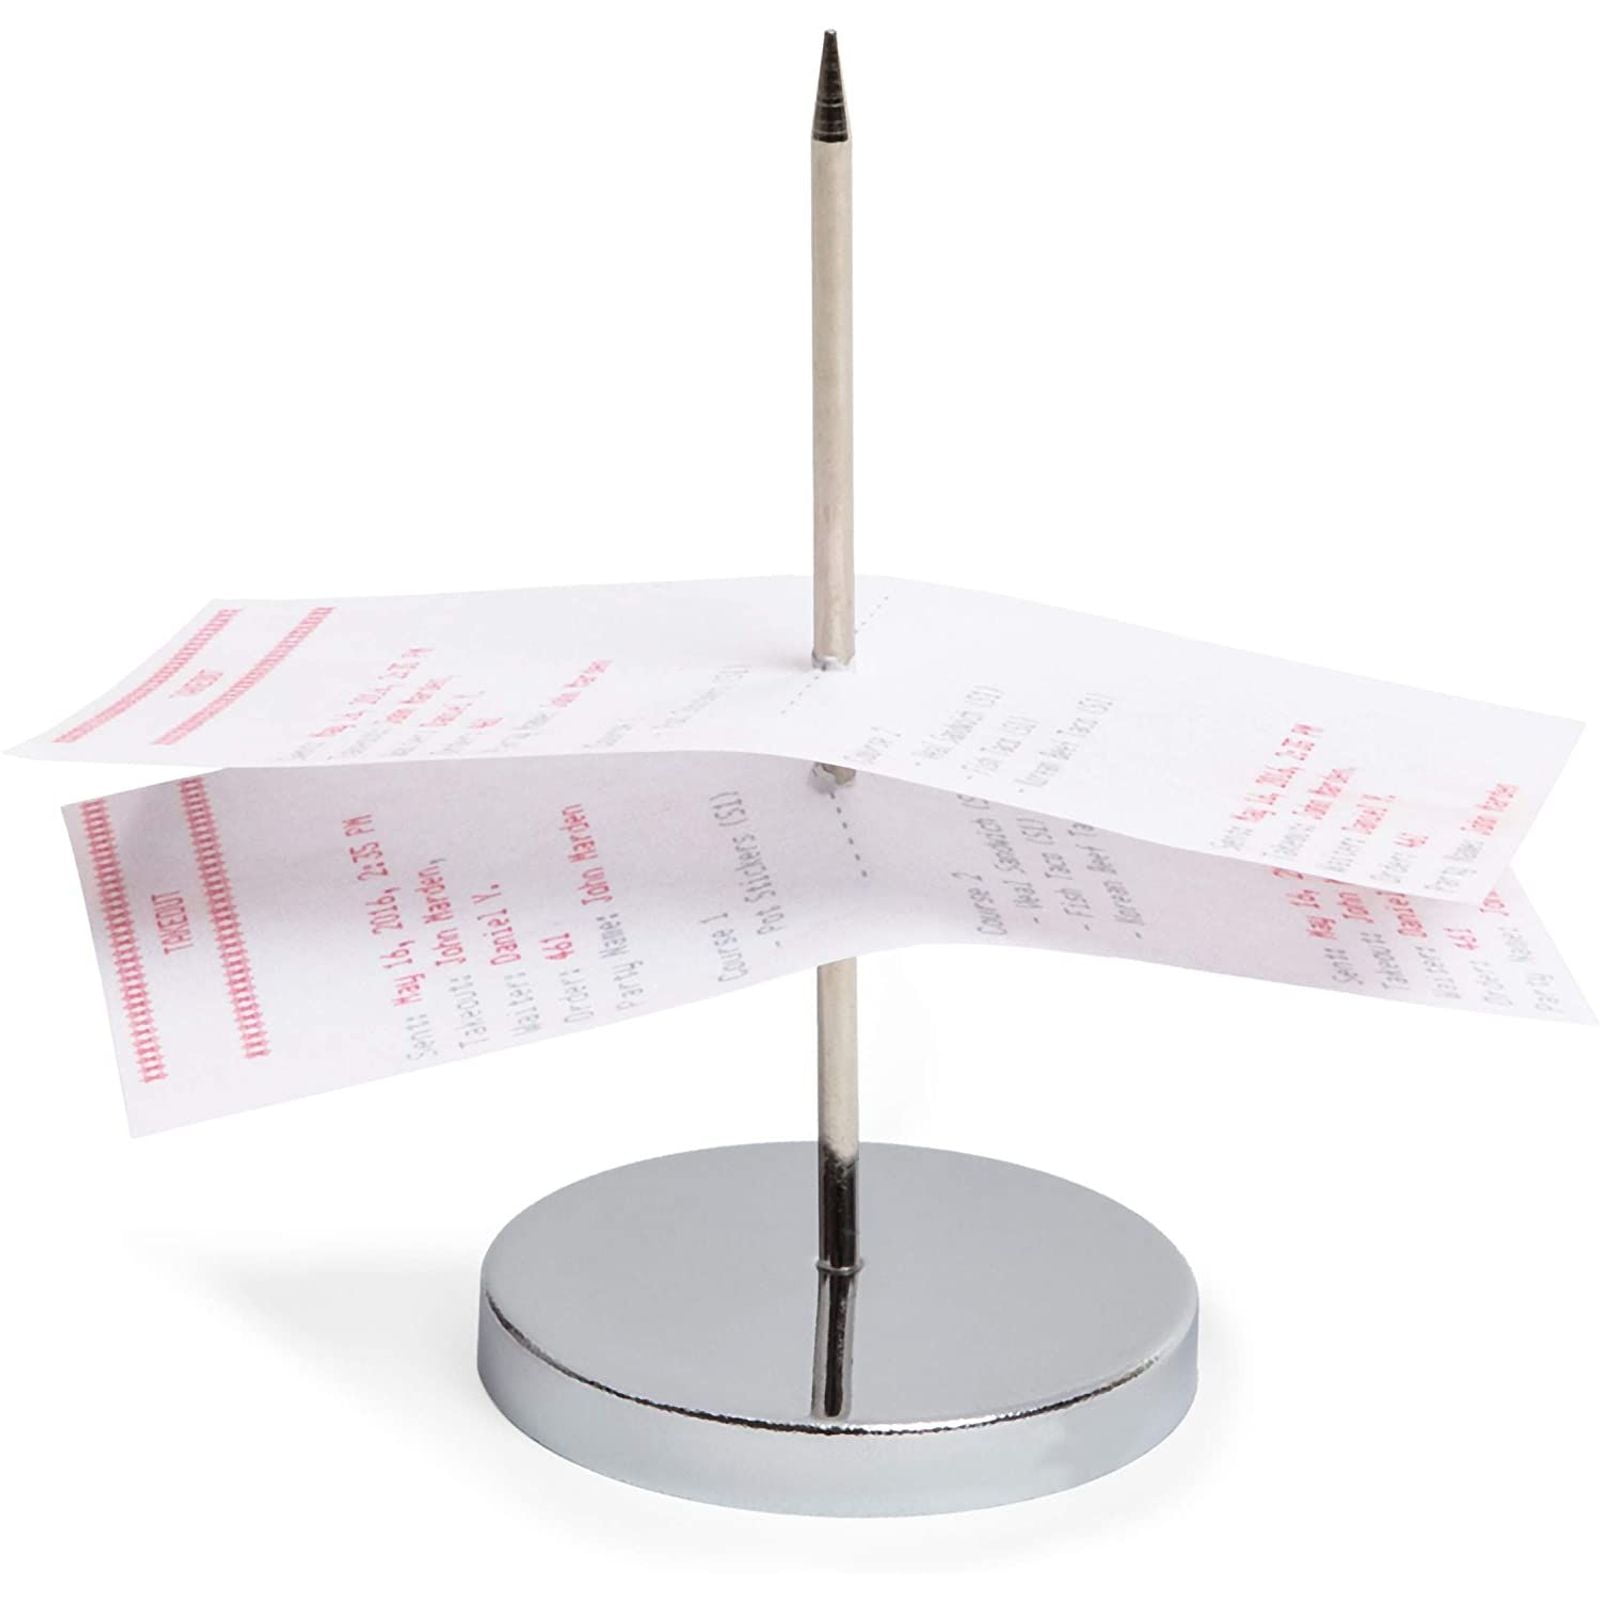 2SETS Metal CHECK SPINDLE receipt holder TICKET SPIKE table service register 